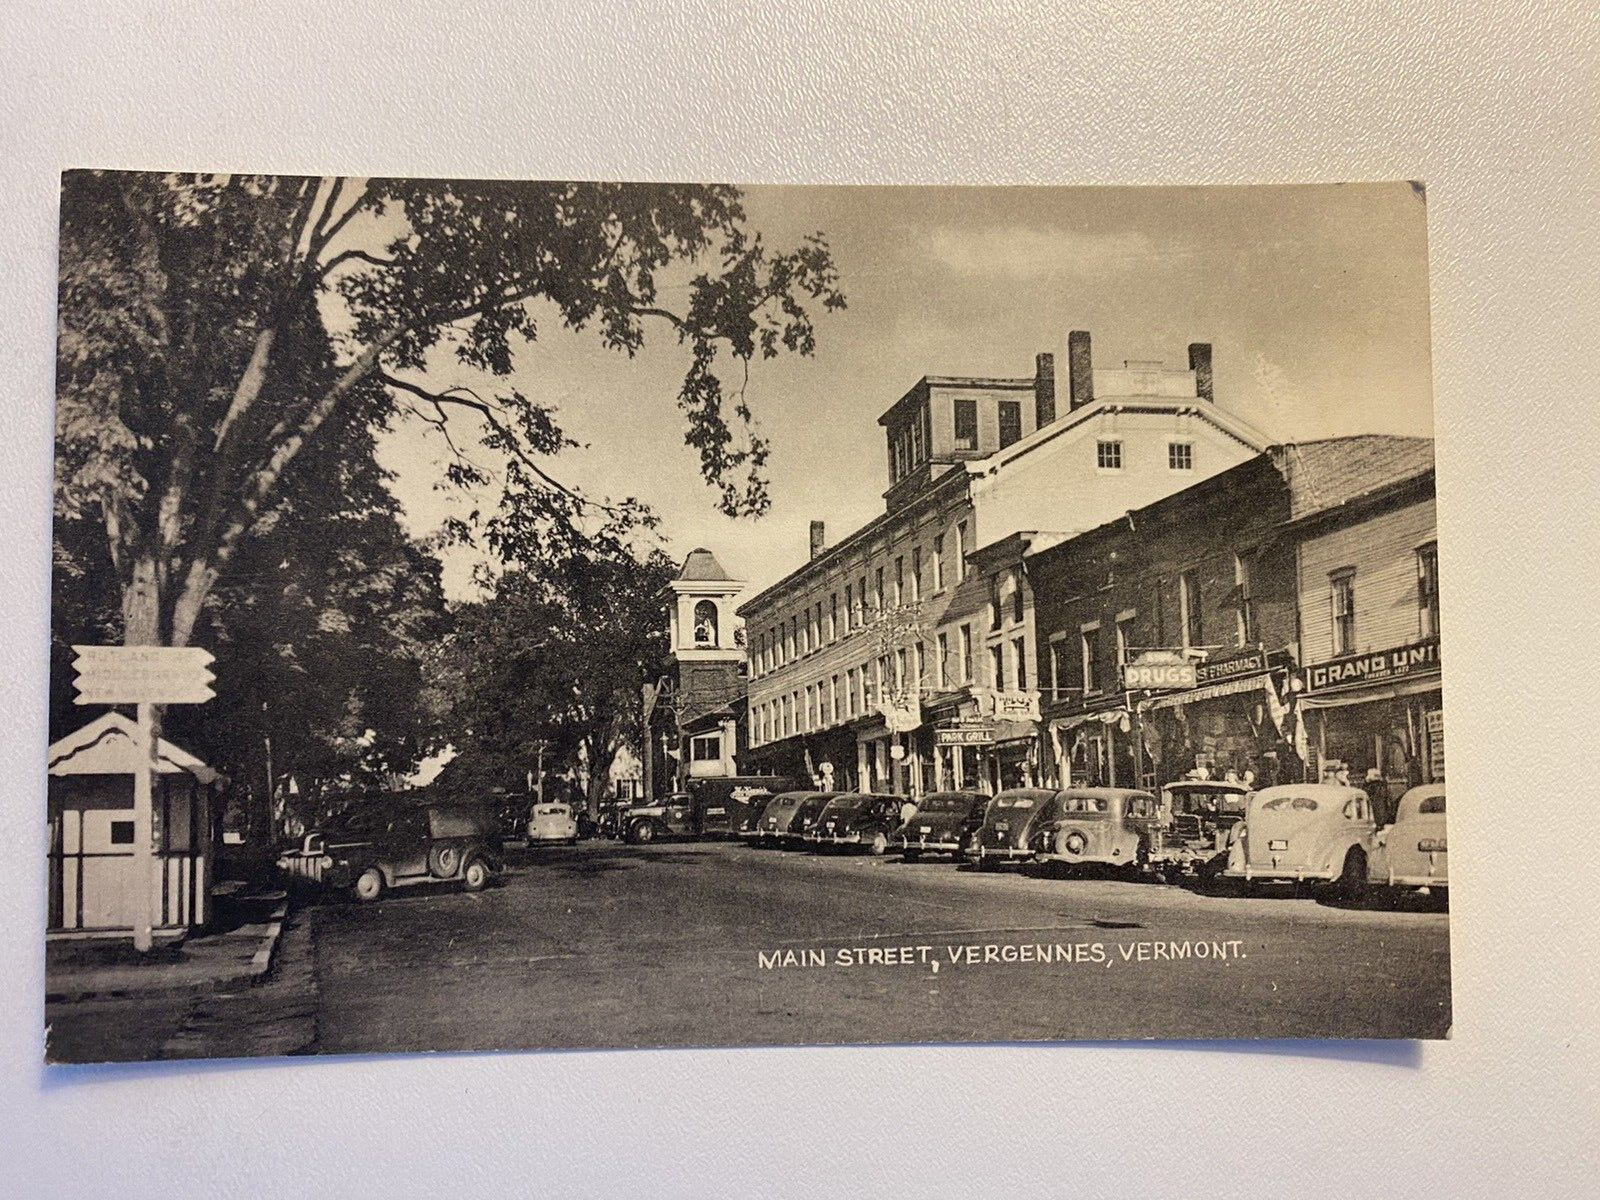 Vergennes, VERMONT MAIN STREET  View Vintage Postcard